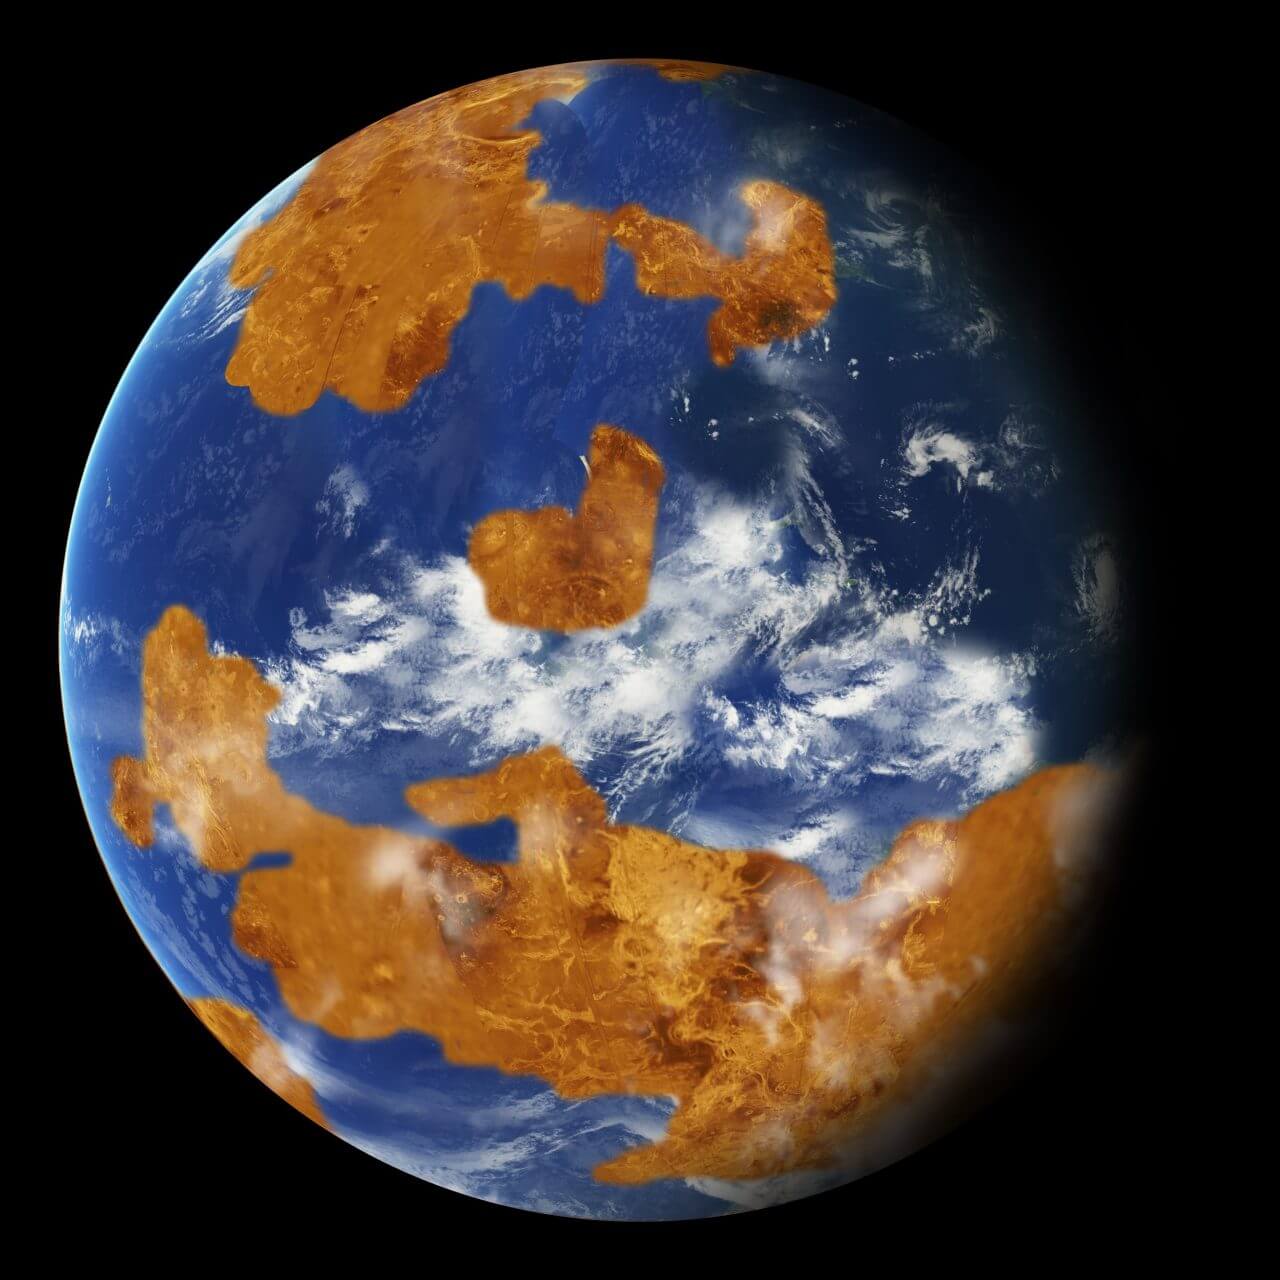 【▲図: かつての金星は、地球と同じように水を湛えていたと推定されているが、その量や継続期間については大きな謎がある。 (Image Credit: NASA) 】